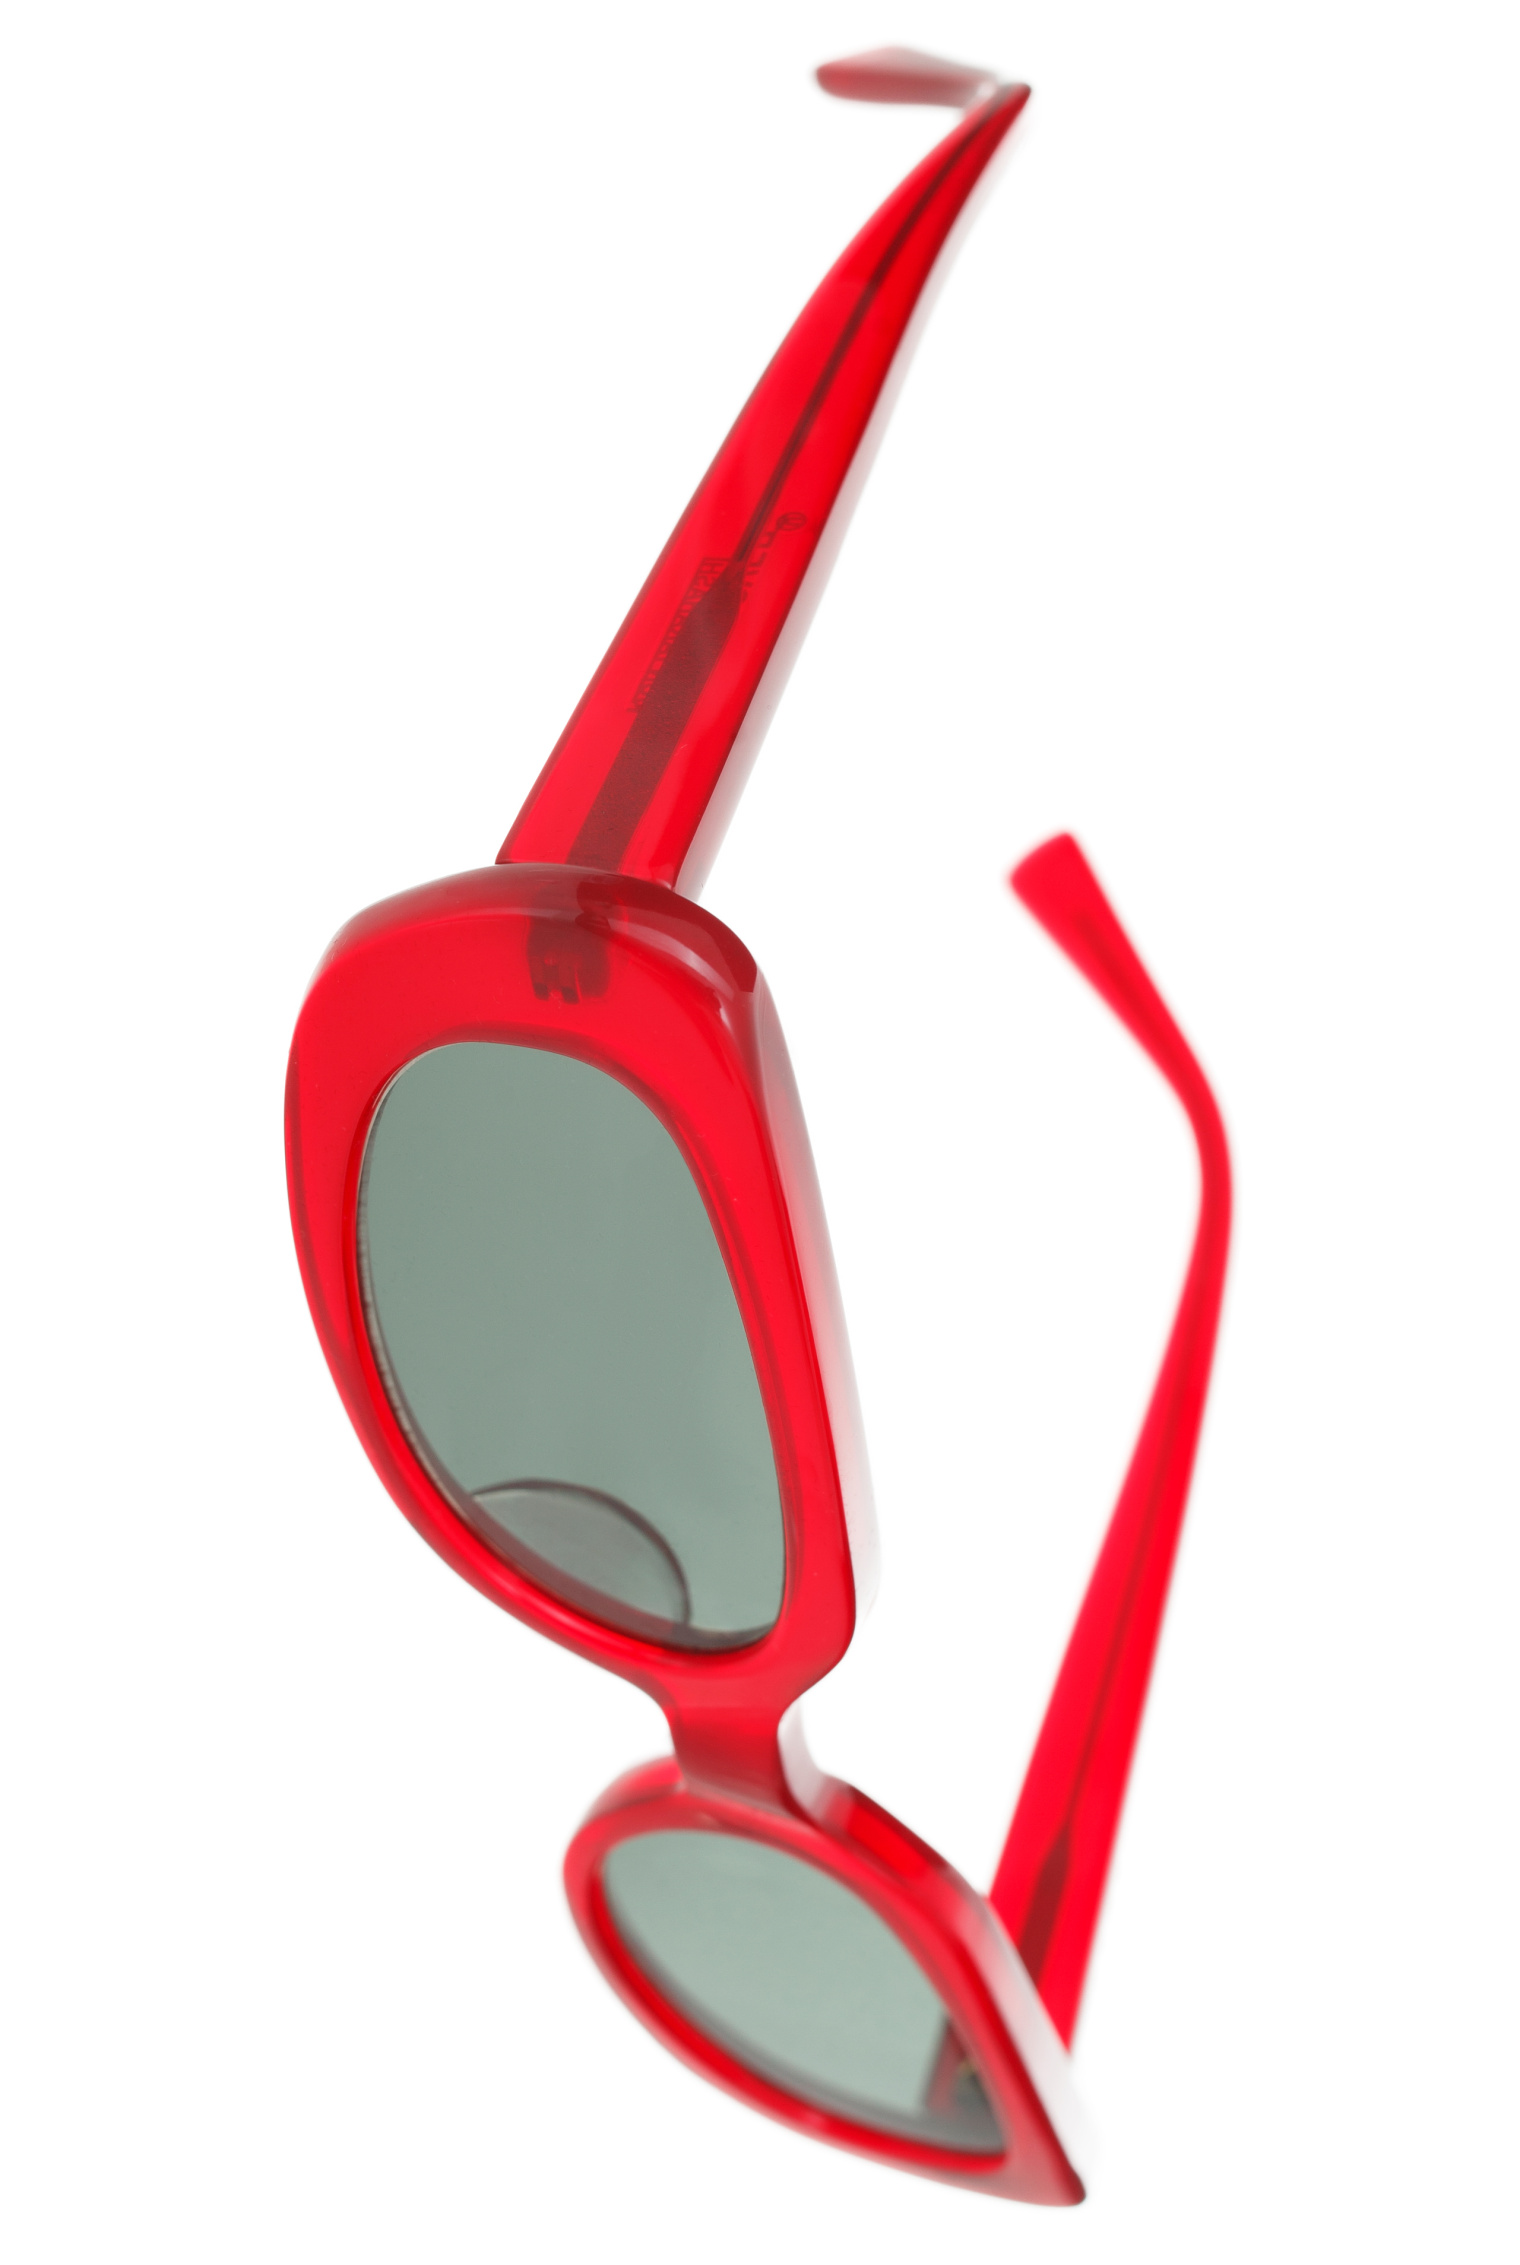 Undercover Овальные очки с красной оправой